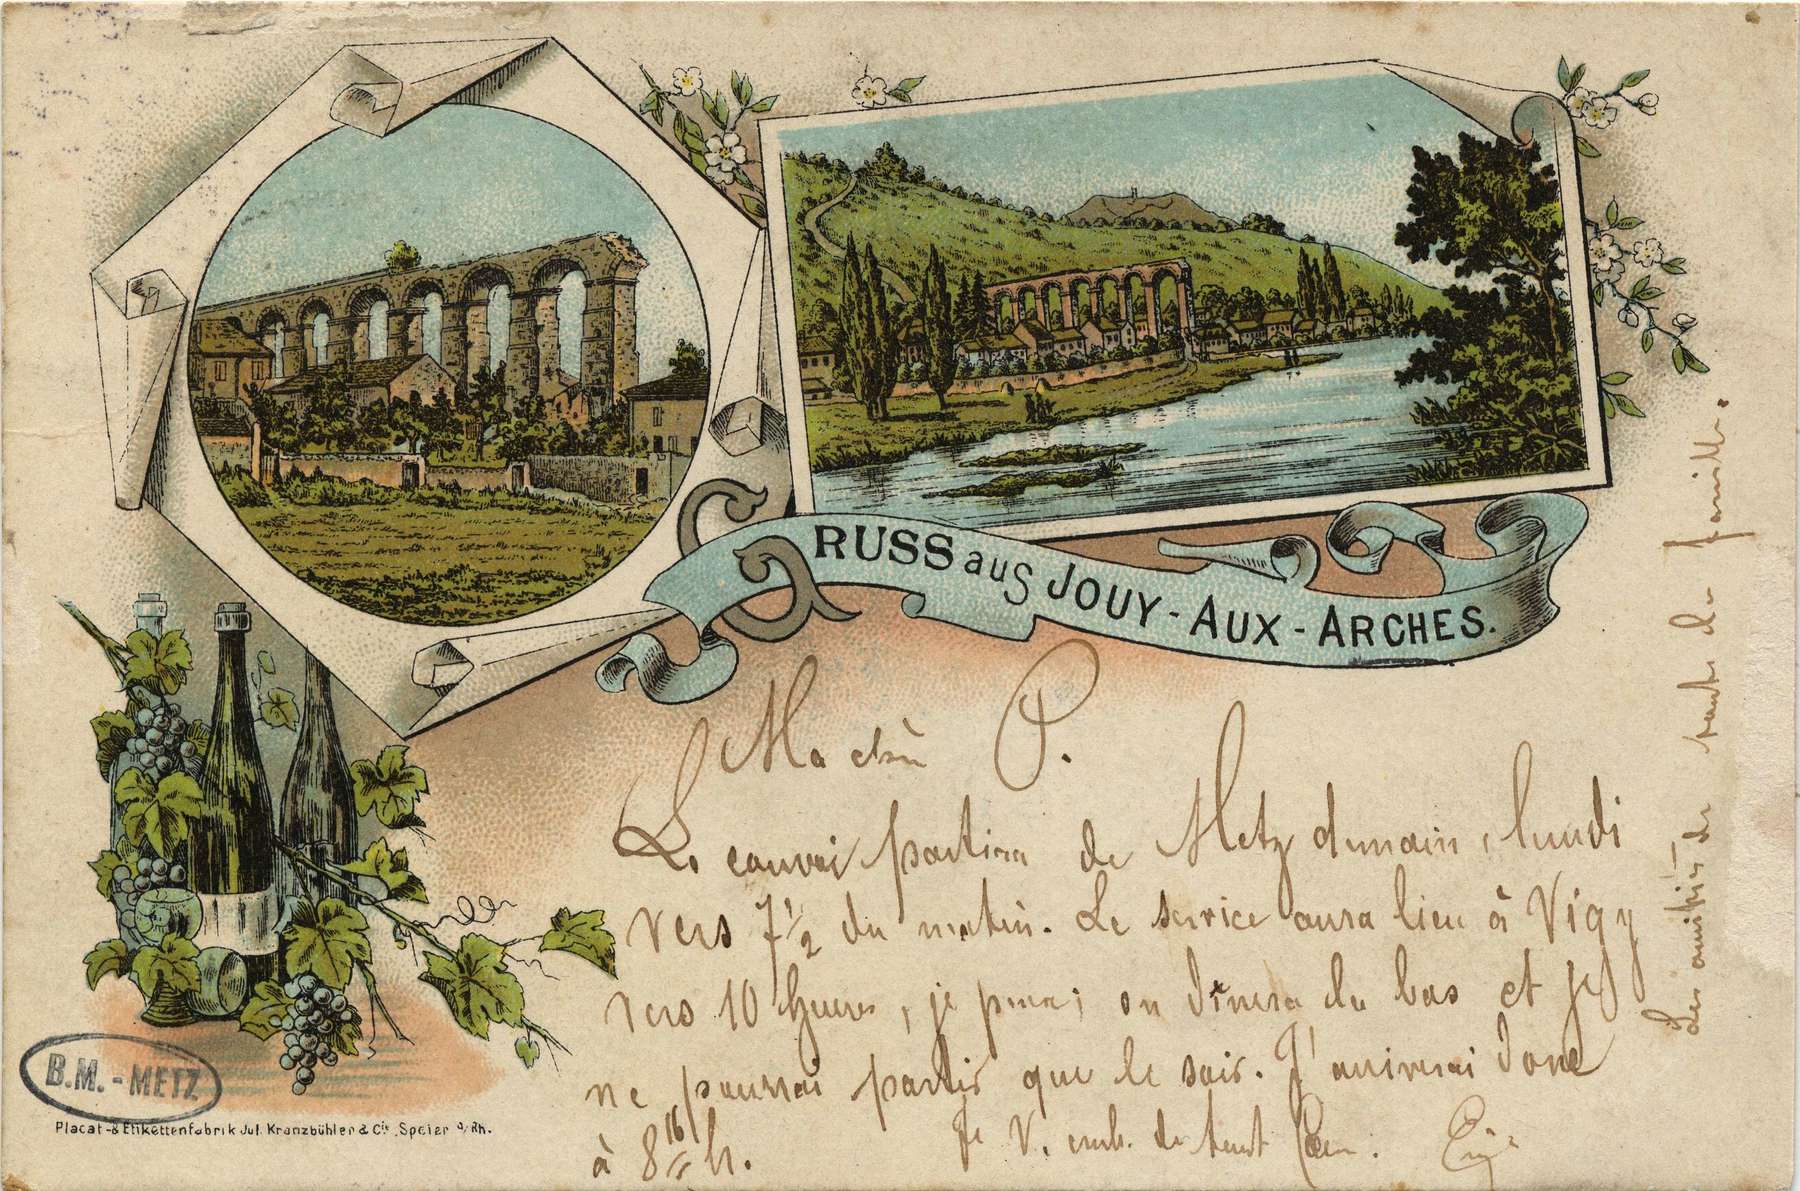 Contenu du Gruss aus Jouy- Aux- Arches